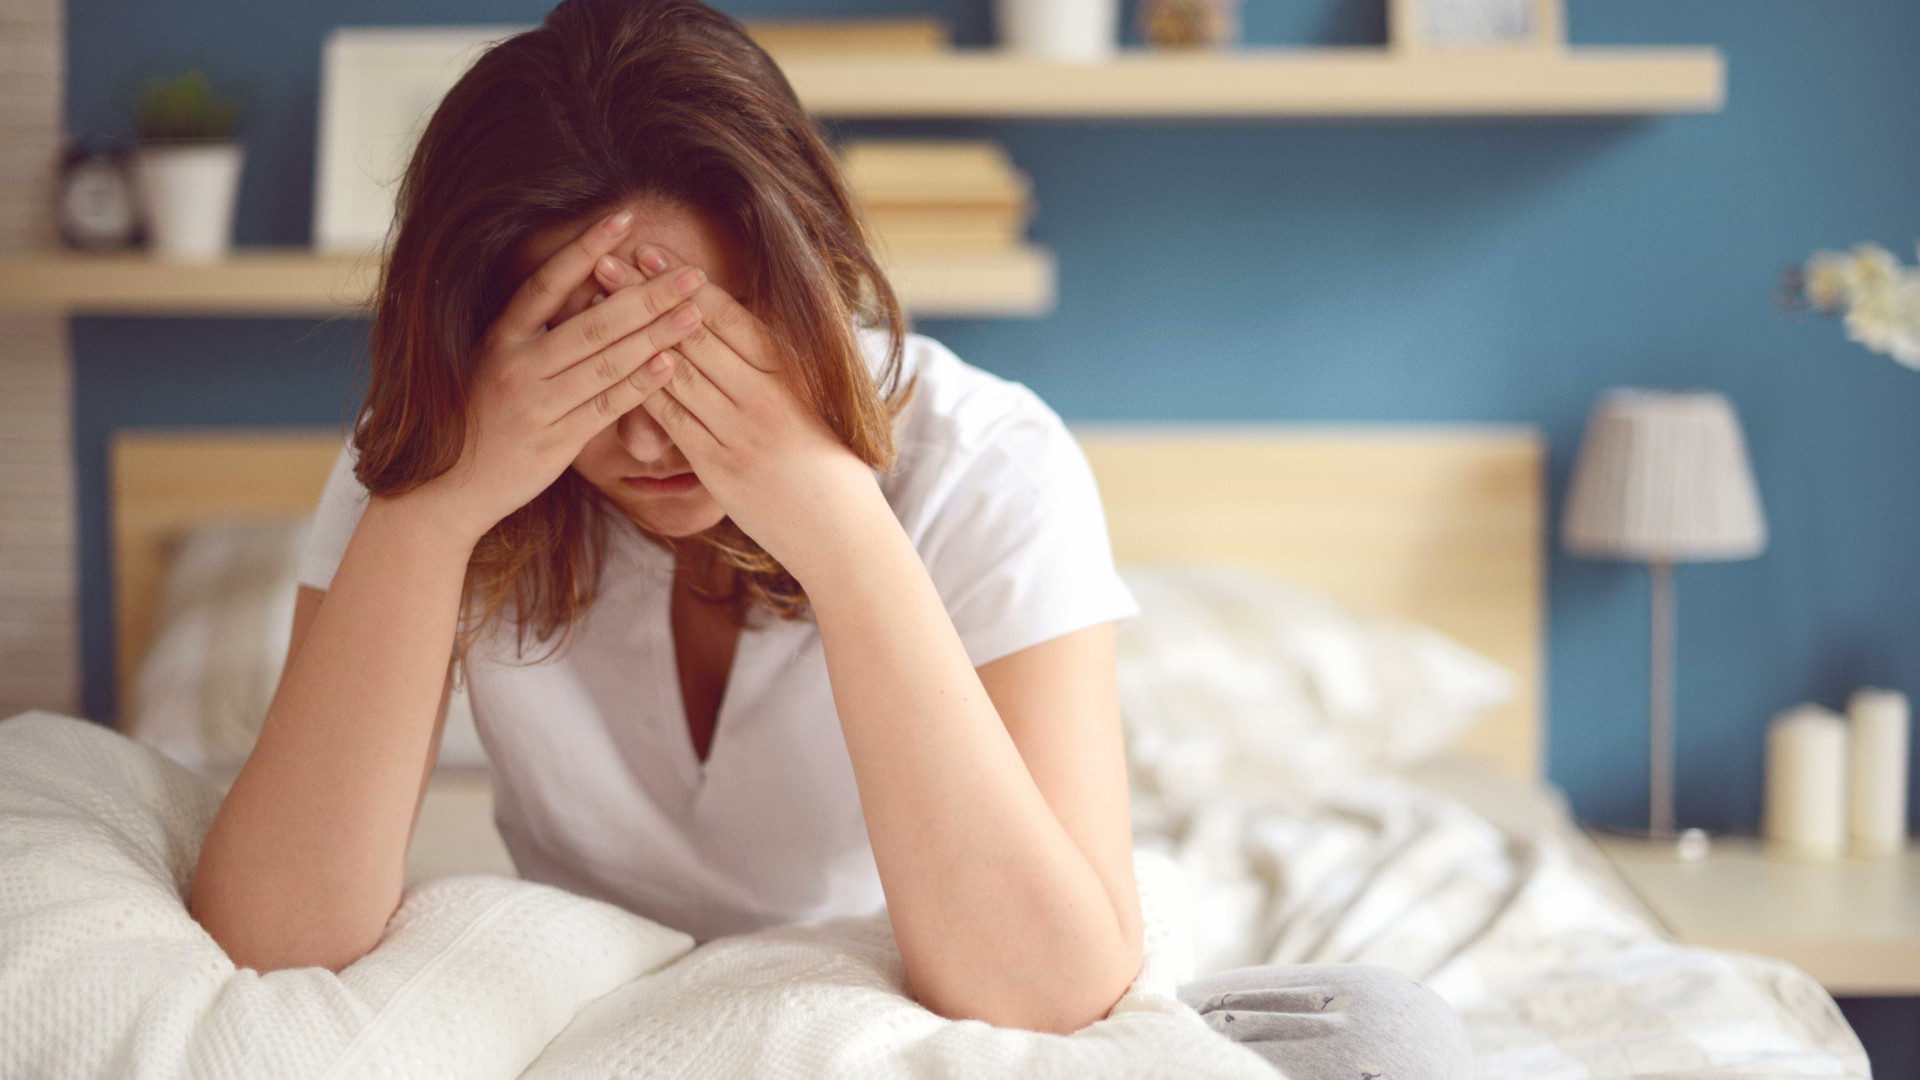 Dor de cabeça pode ser causada por abuso de analgésico, alerta médico